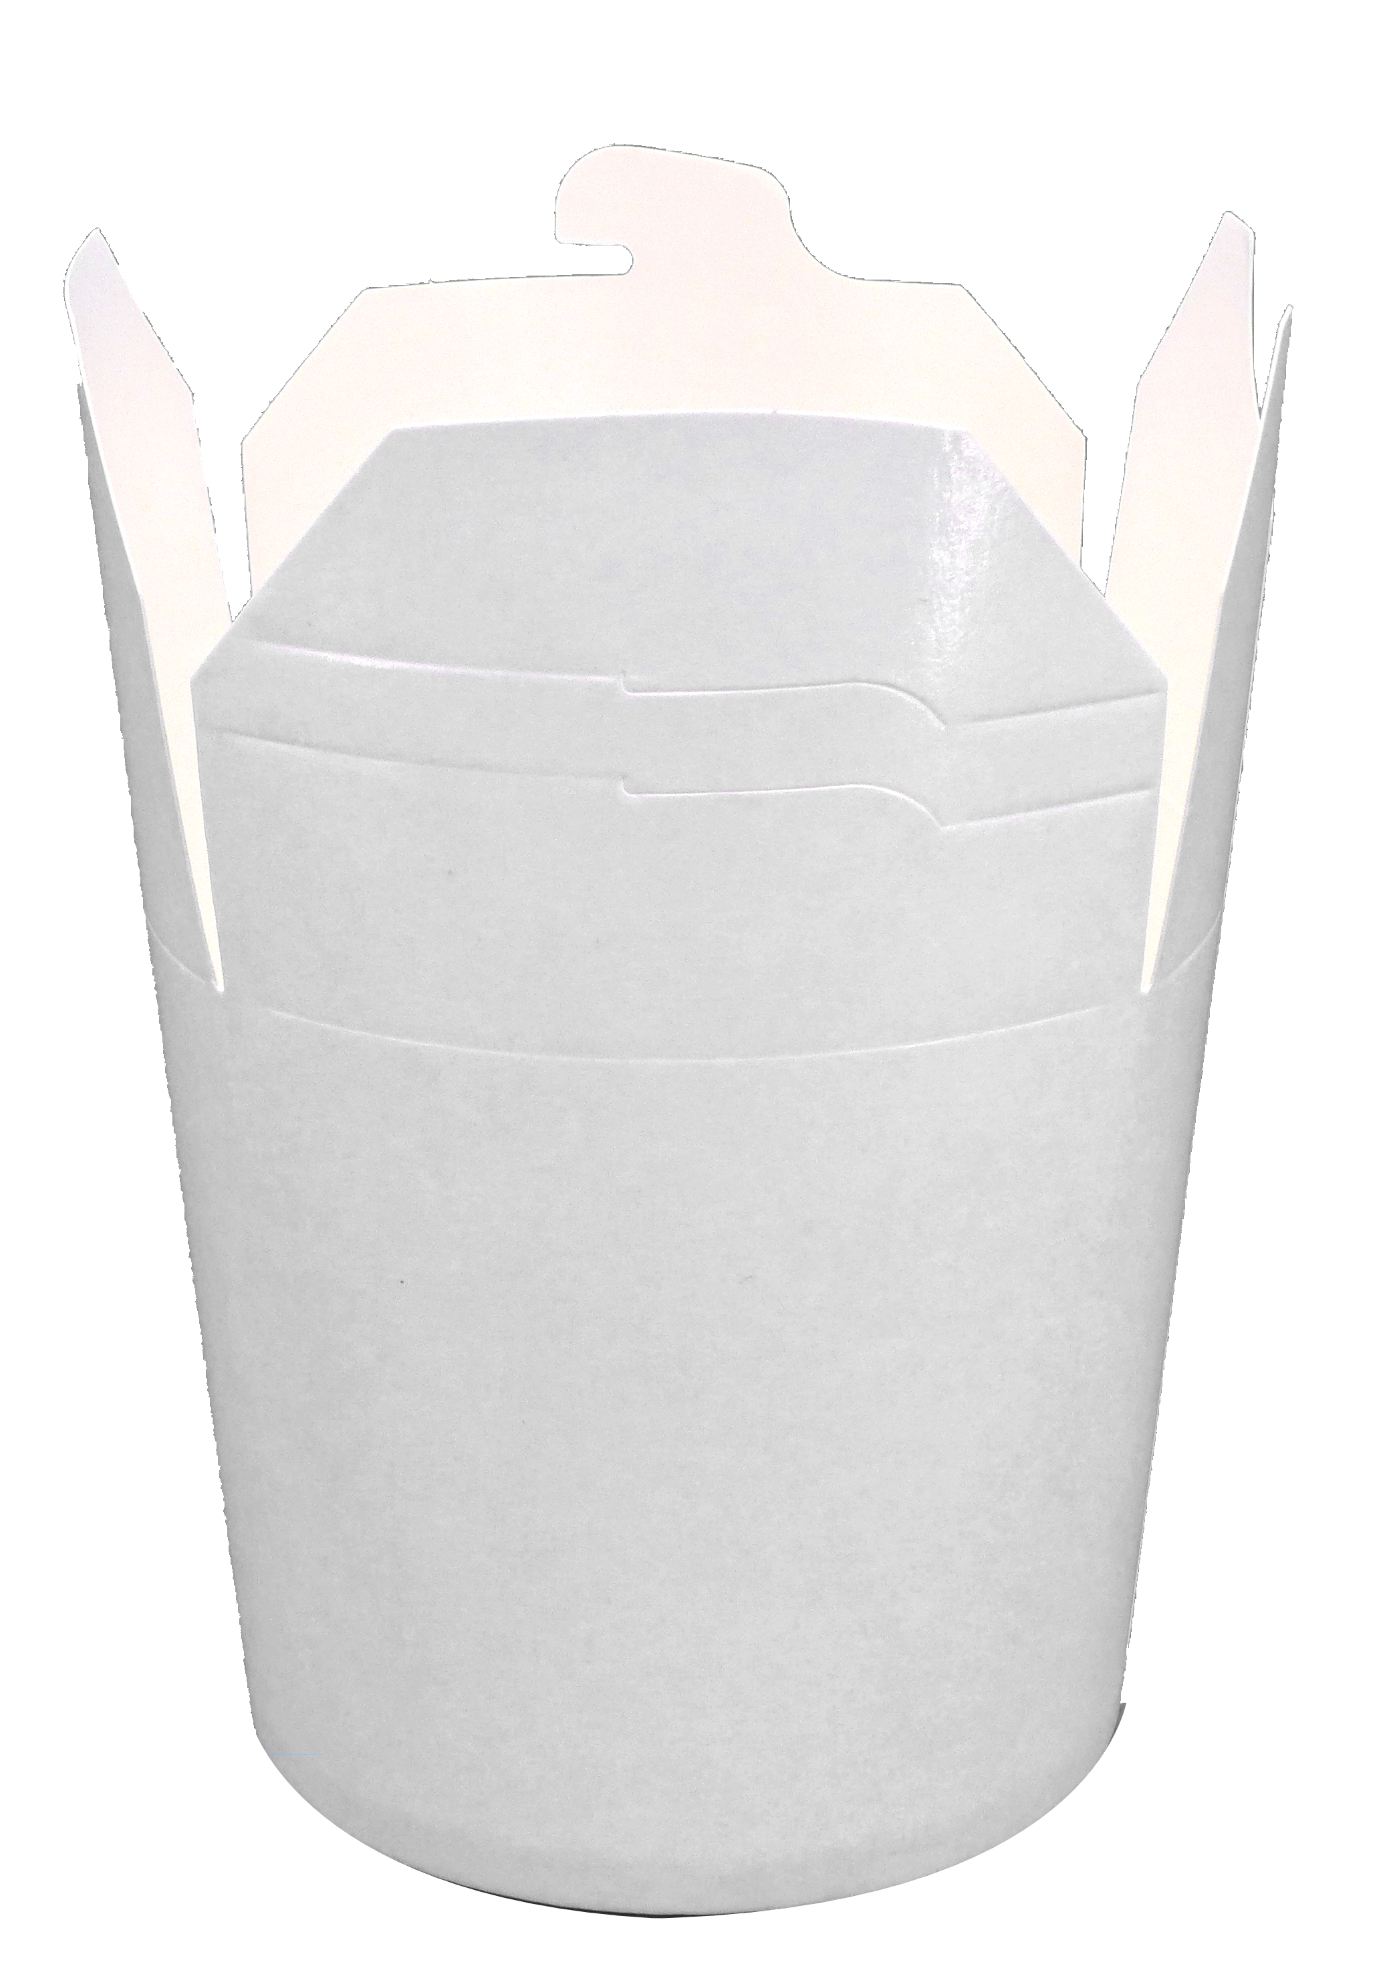 Nudelbox weiß, rund, 16 oz, 500 ml, Asiabox